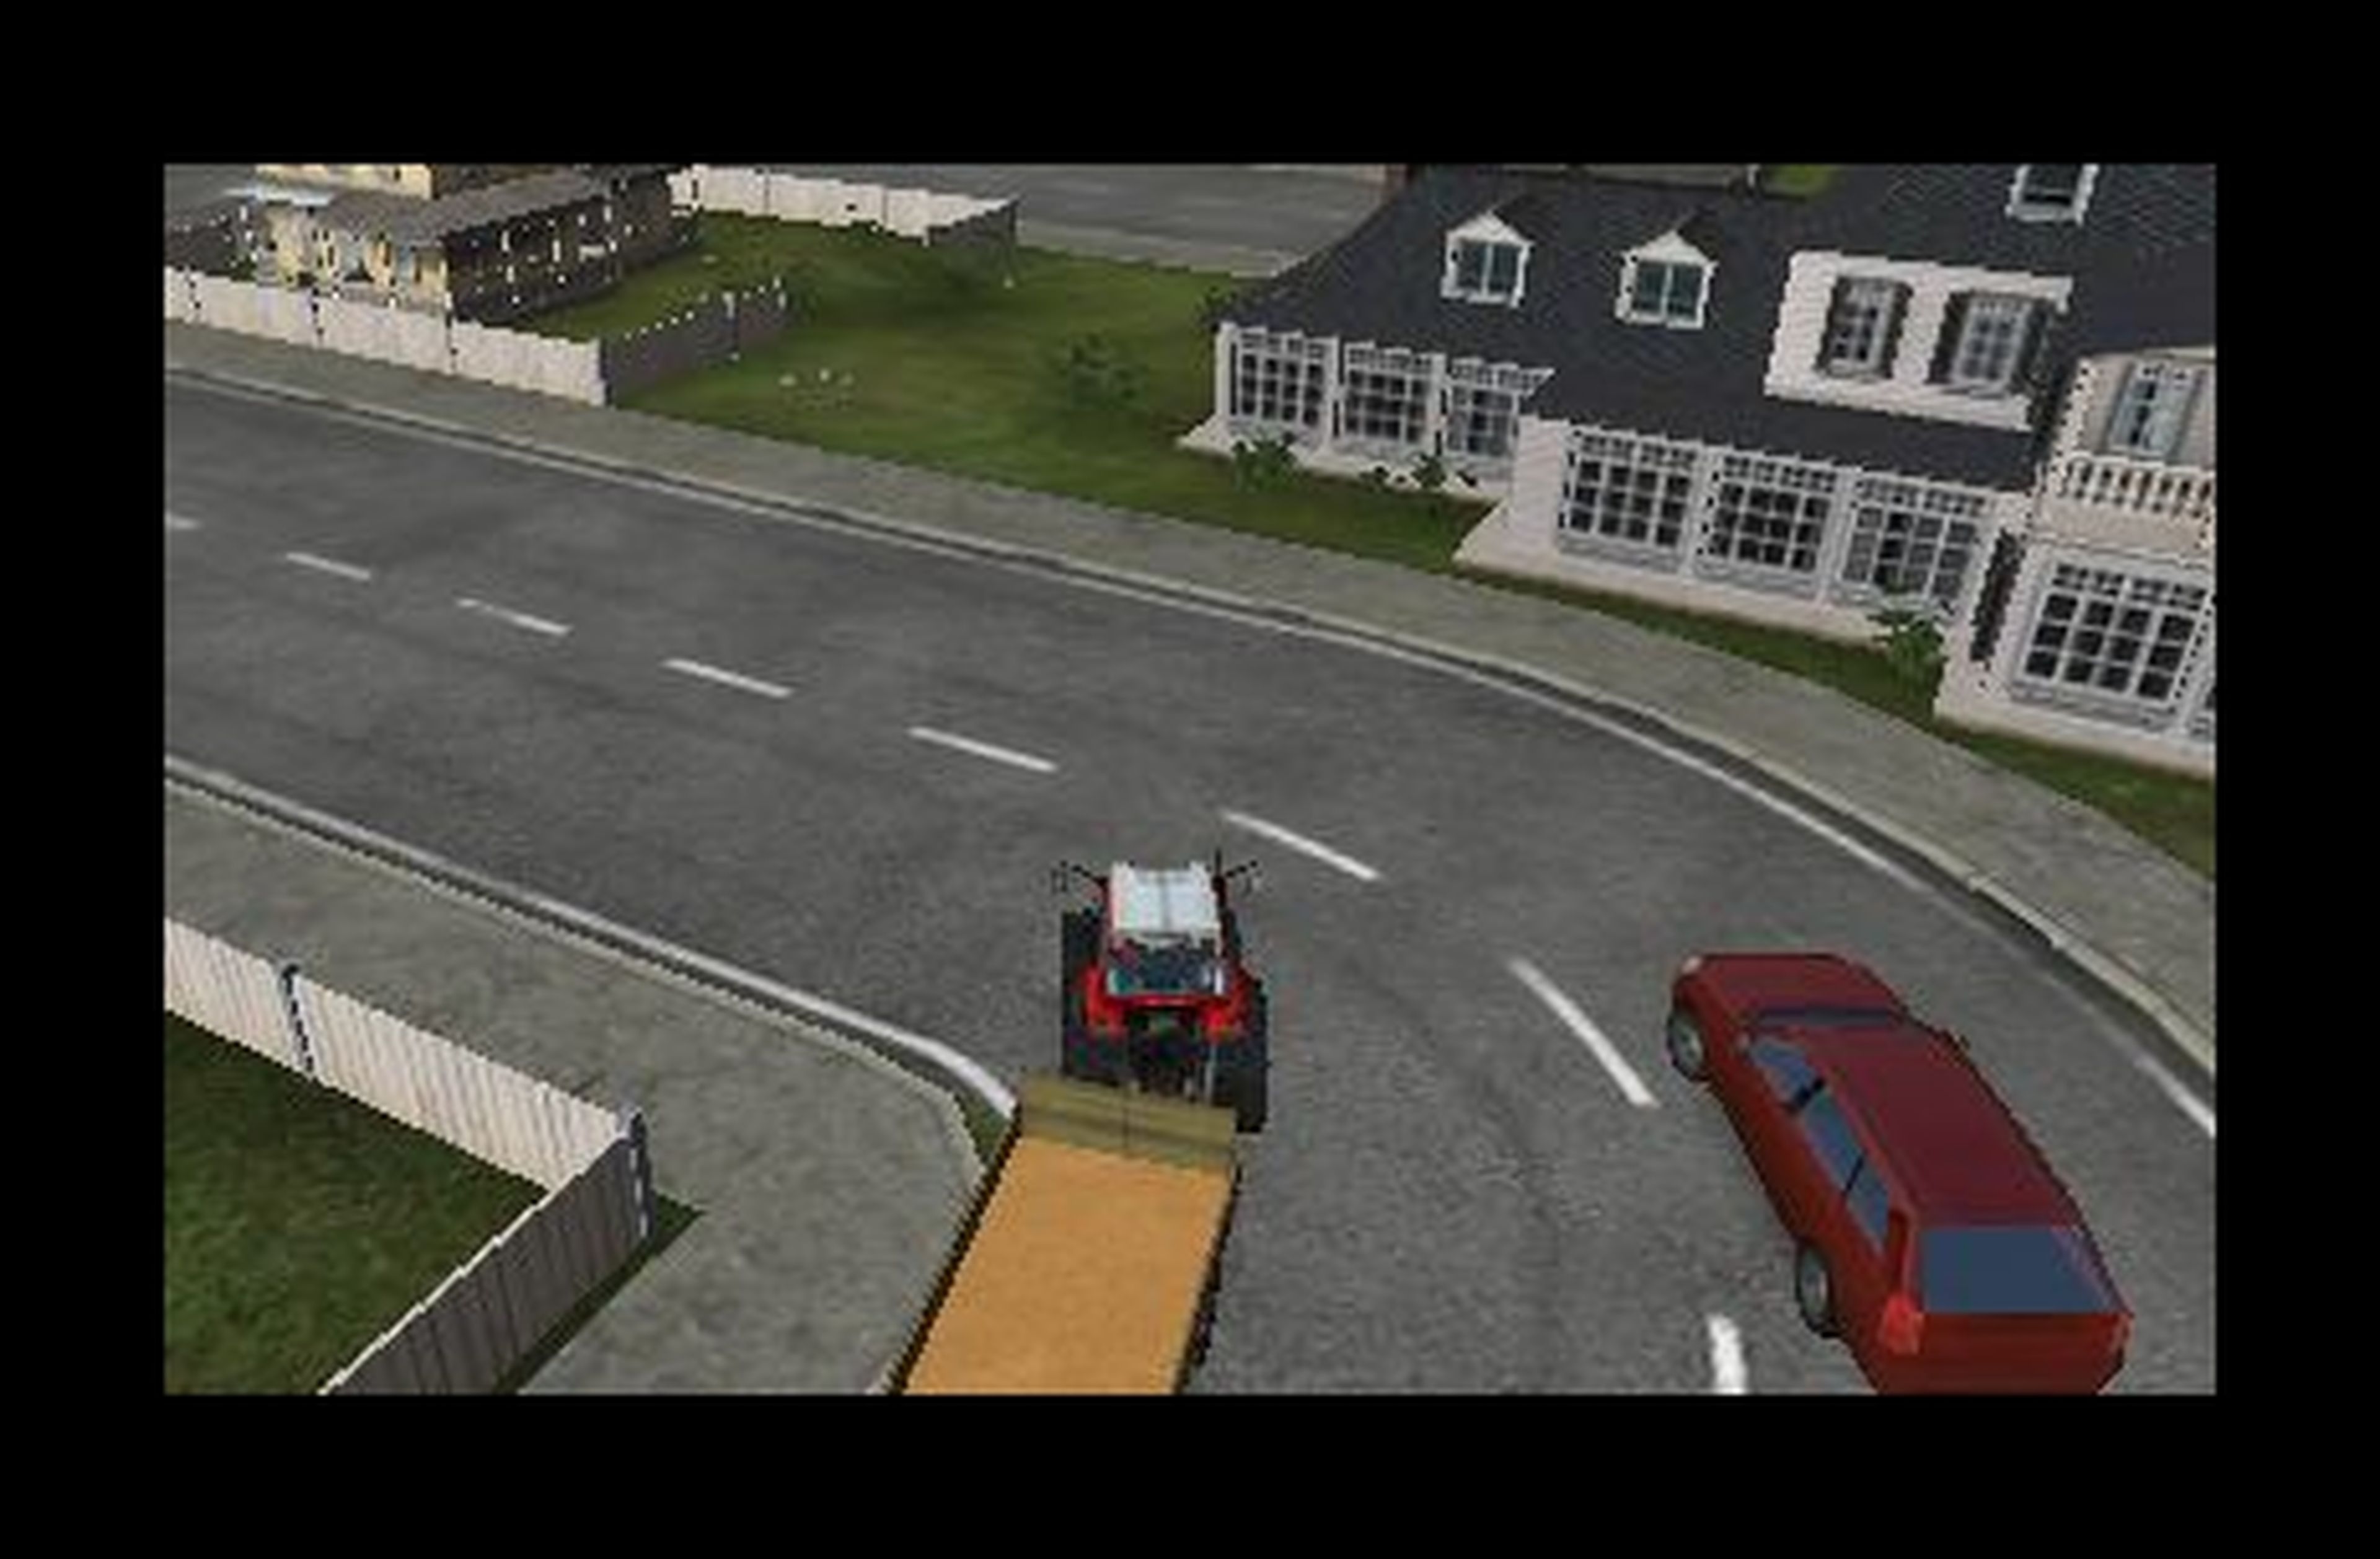 Análisis de Farming Simulator 14